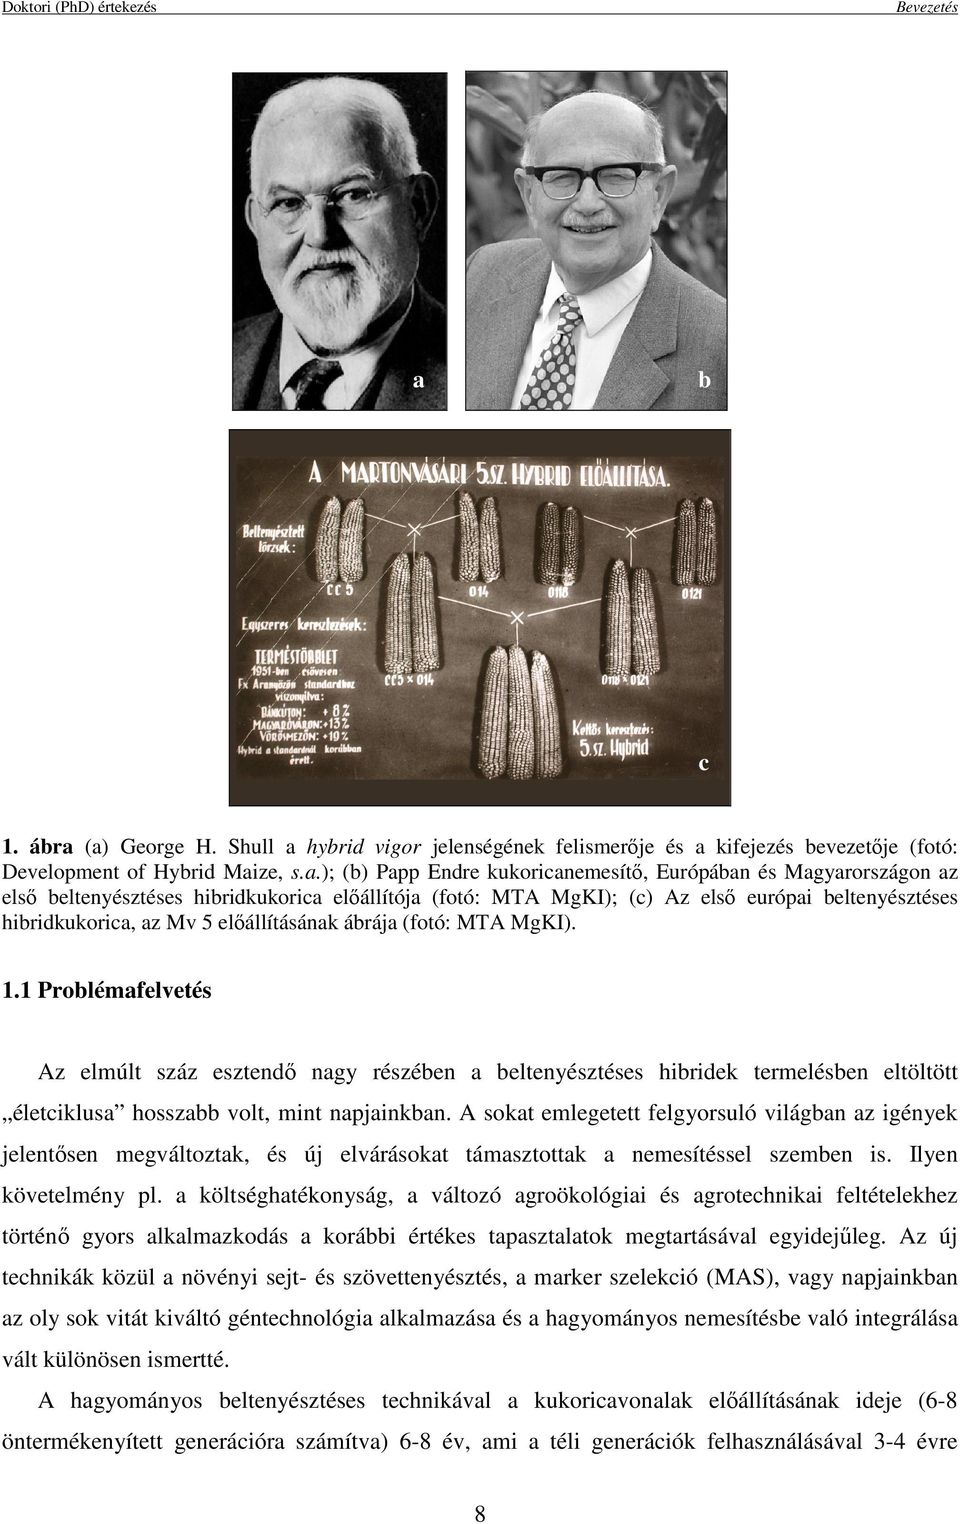 (a) George H. Shull a hybrid vigor jelenségének felismerıje és a kifejezés bevezetıje (fotó: Development of Hybrid Maize, s.a.); (b) Papp Endre kukoricanemesítı, Európában és Magyarországon az elsı